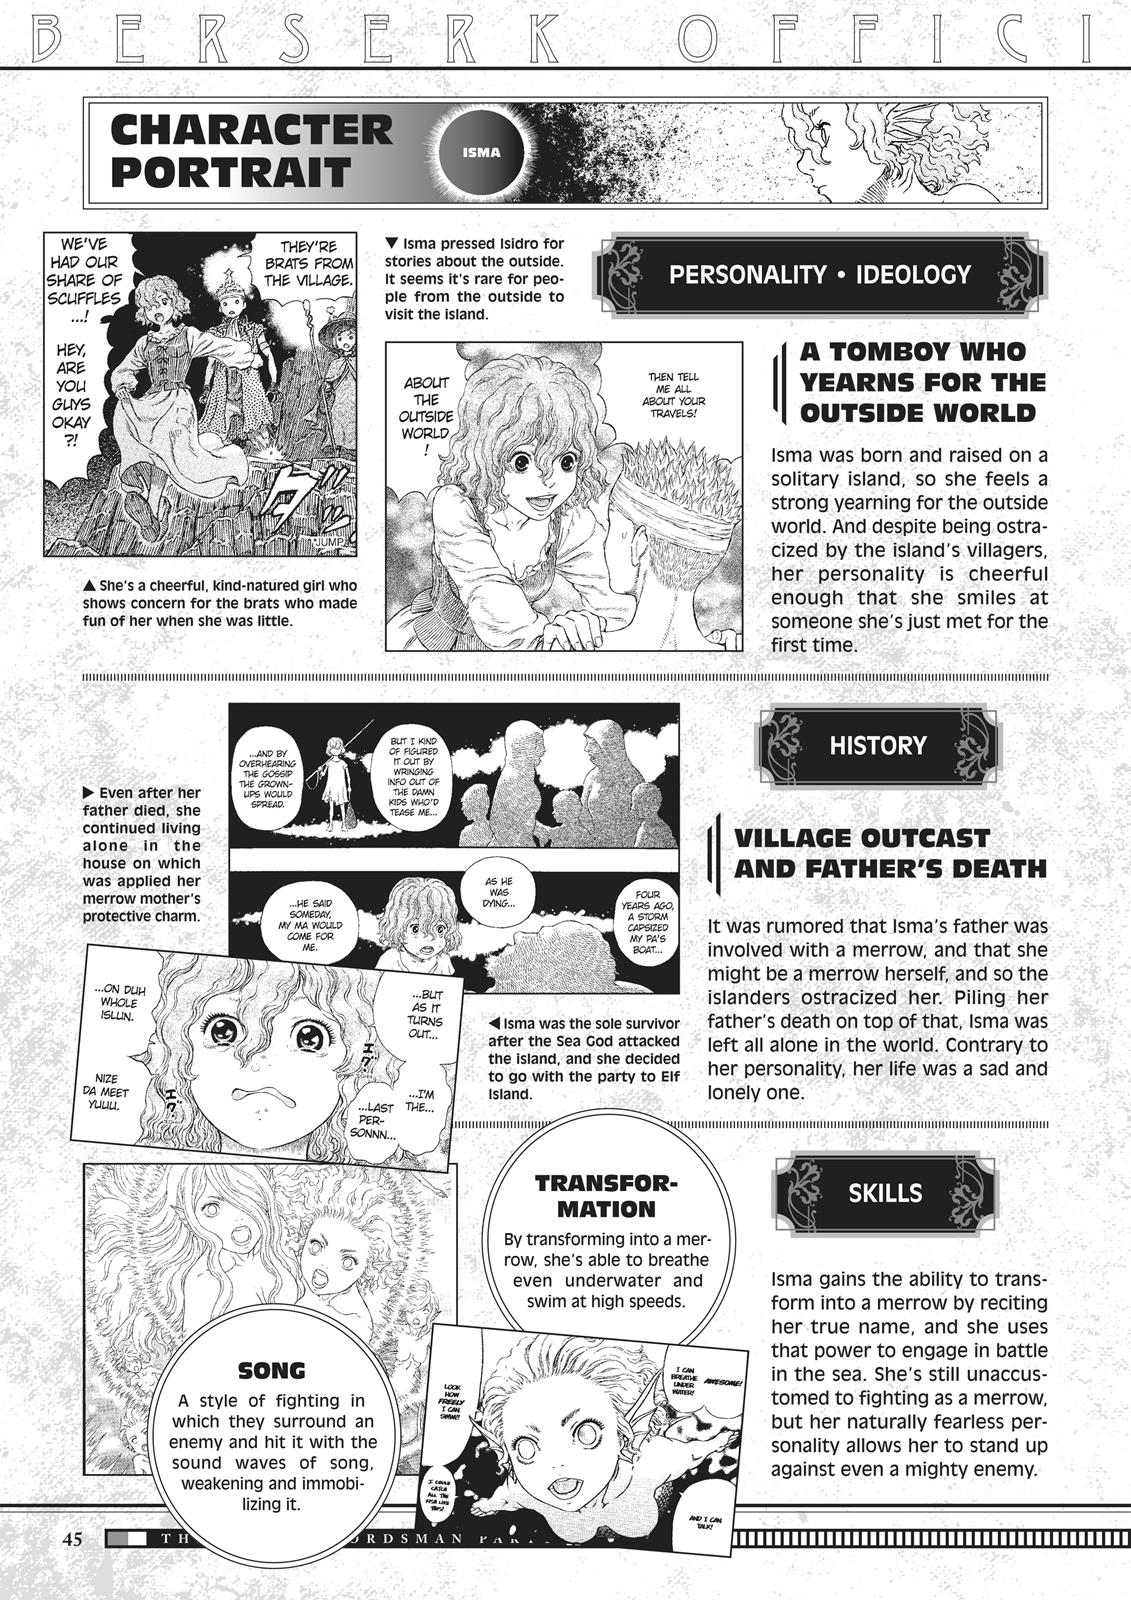 Berserk Manga Chapter 350.5 image 045